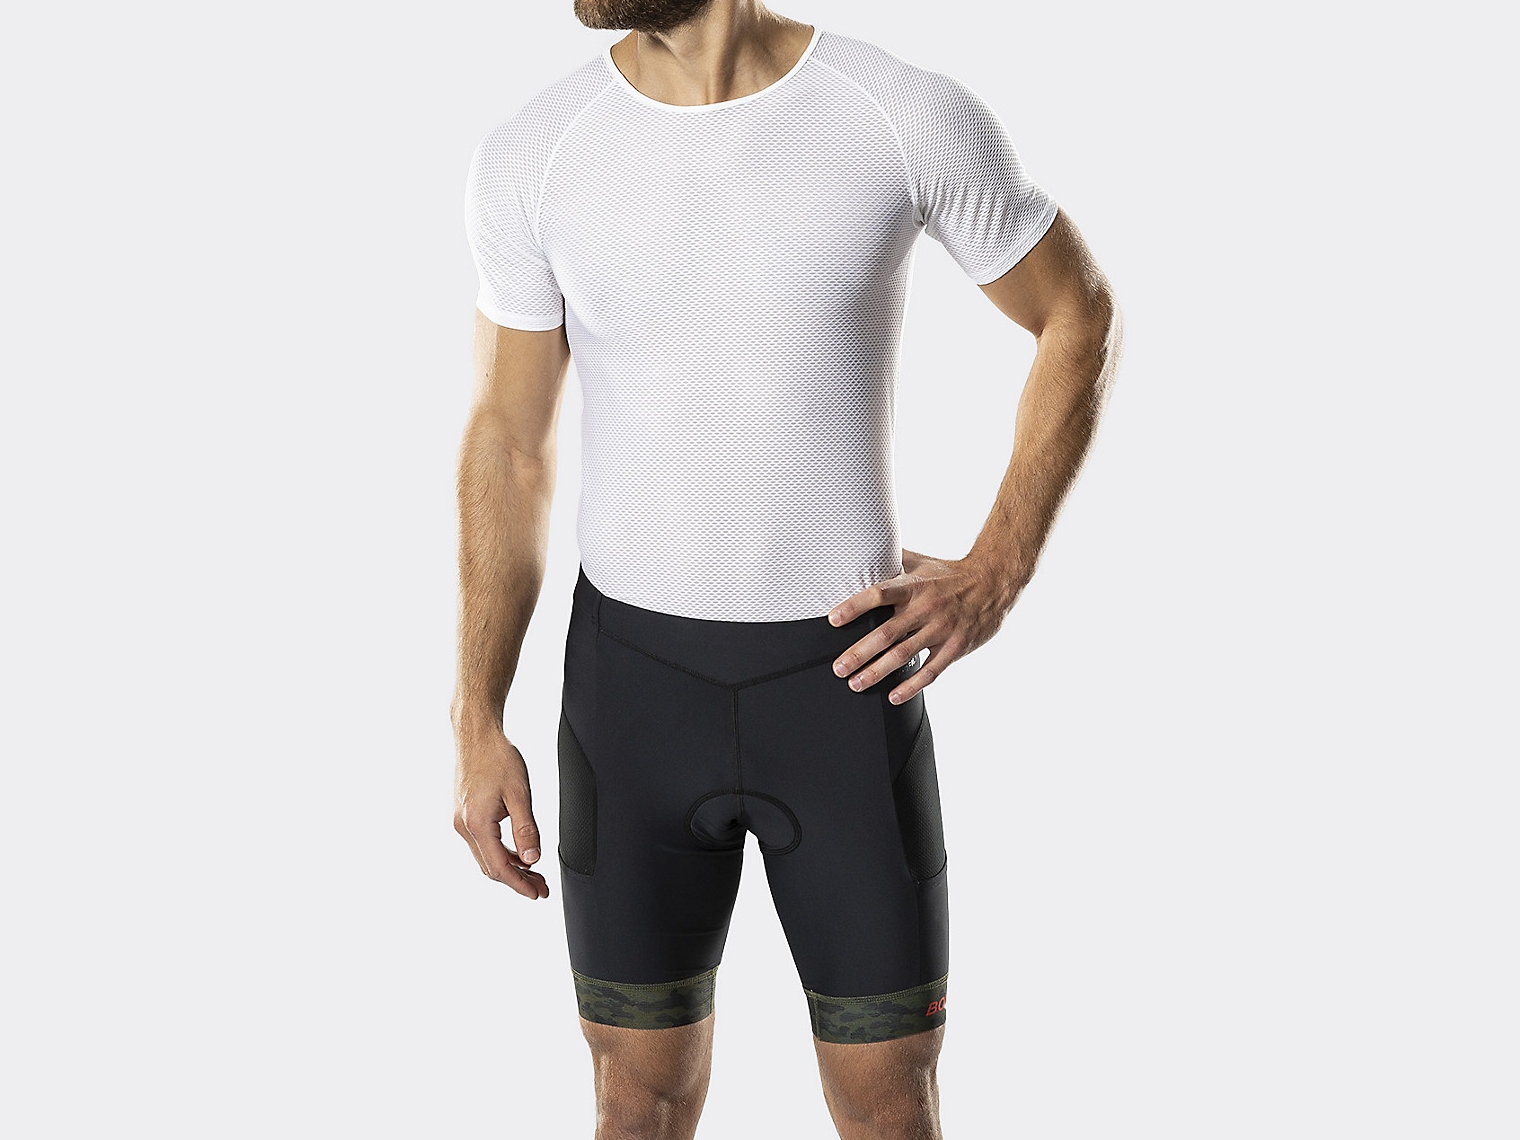 best bike liner shorts